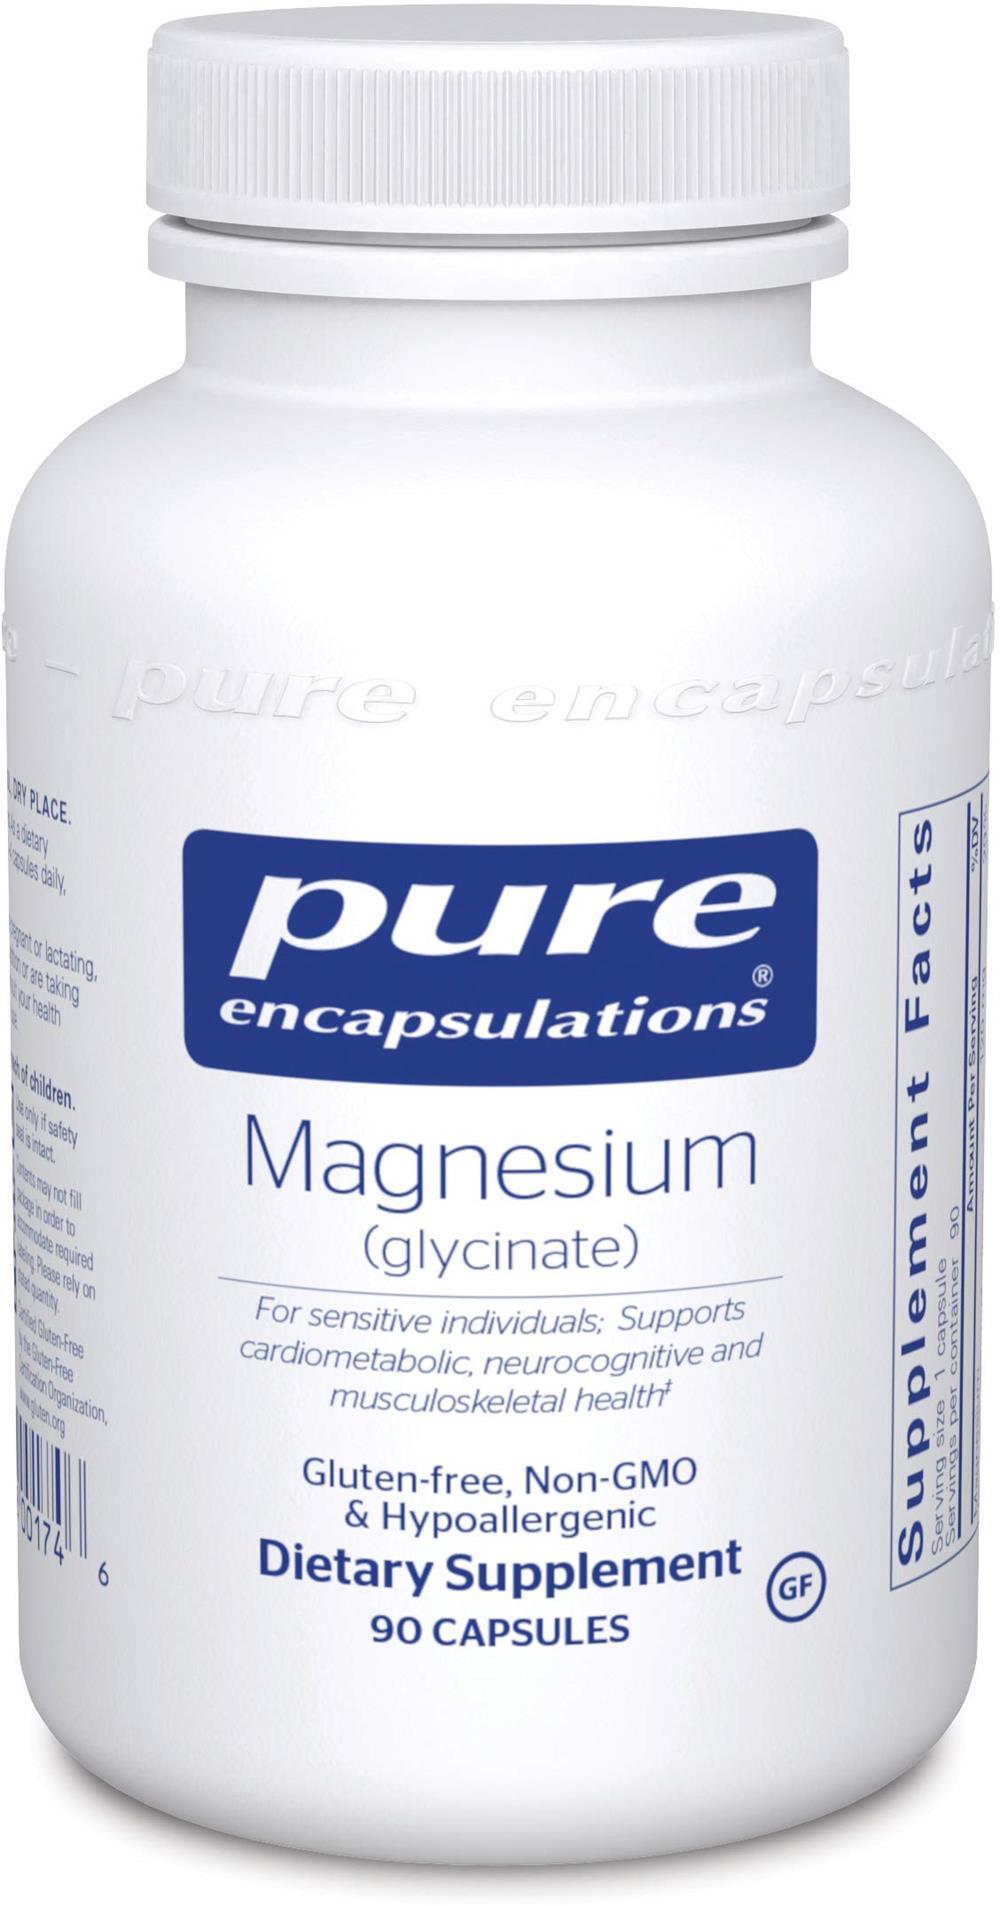 Pure Encapsulations Magnesium (glycinate) -- 90 Capsules 90 capsles